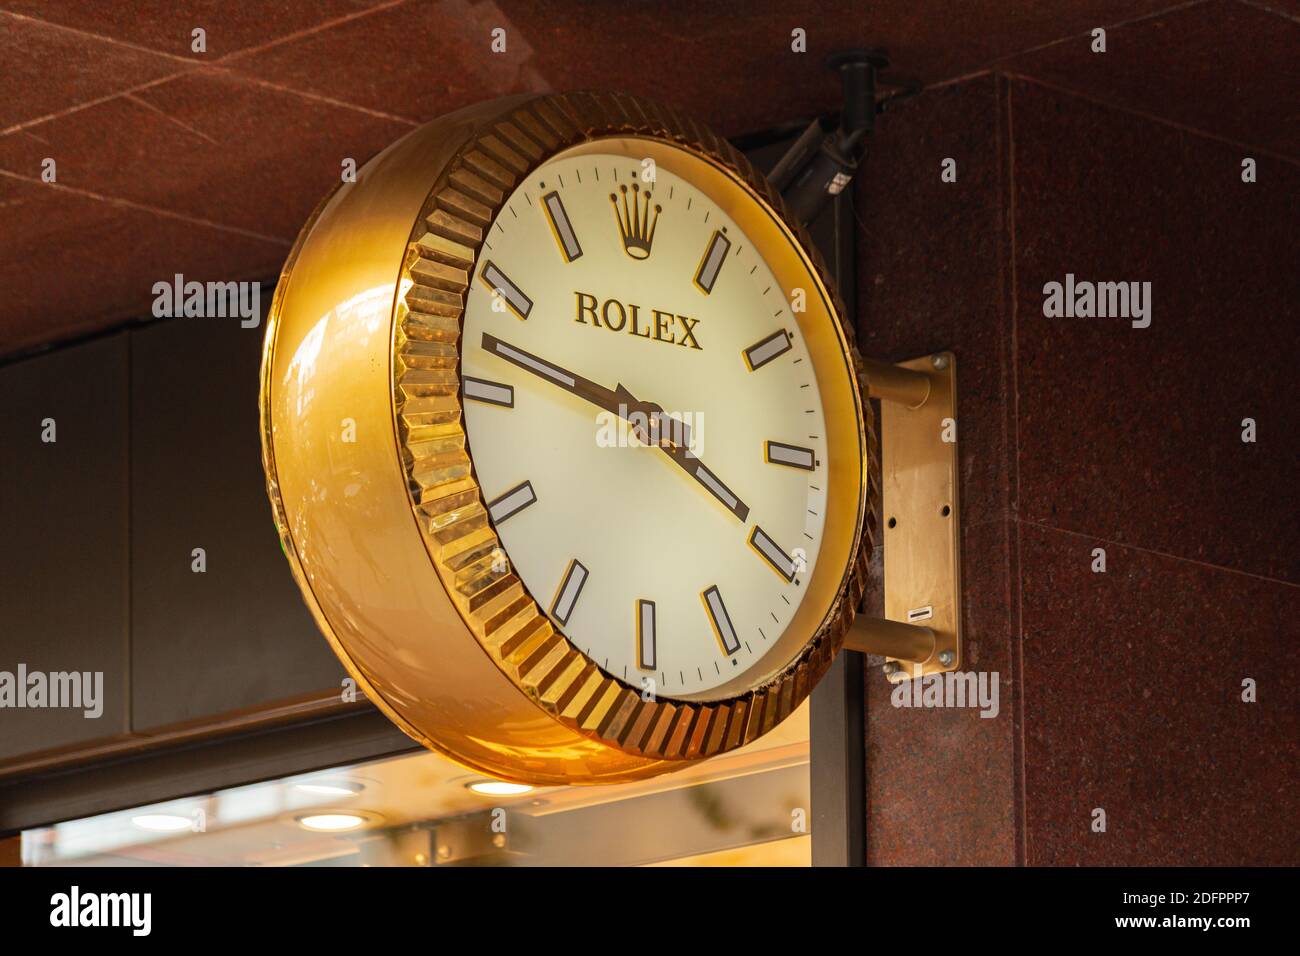 Horloge murale pour rolex Banque de photographies et d'images à haute  résolution - Alamy